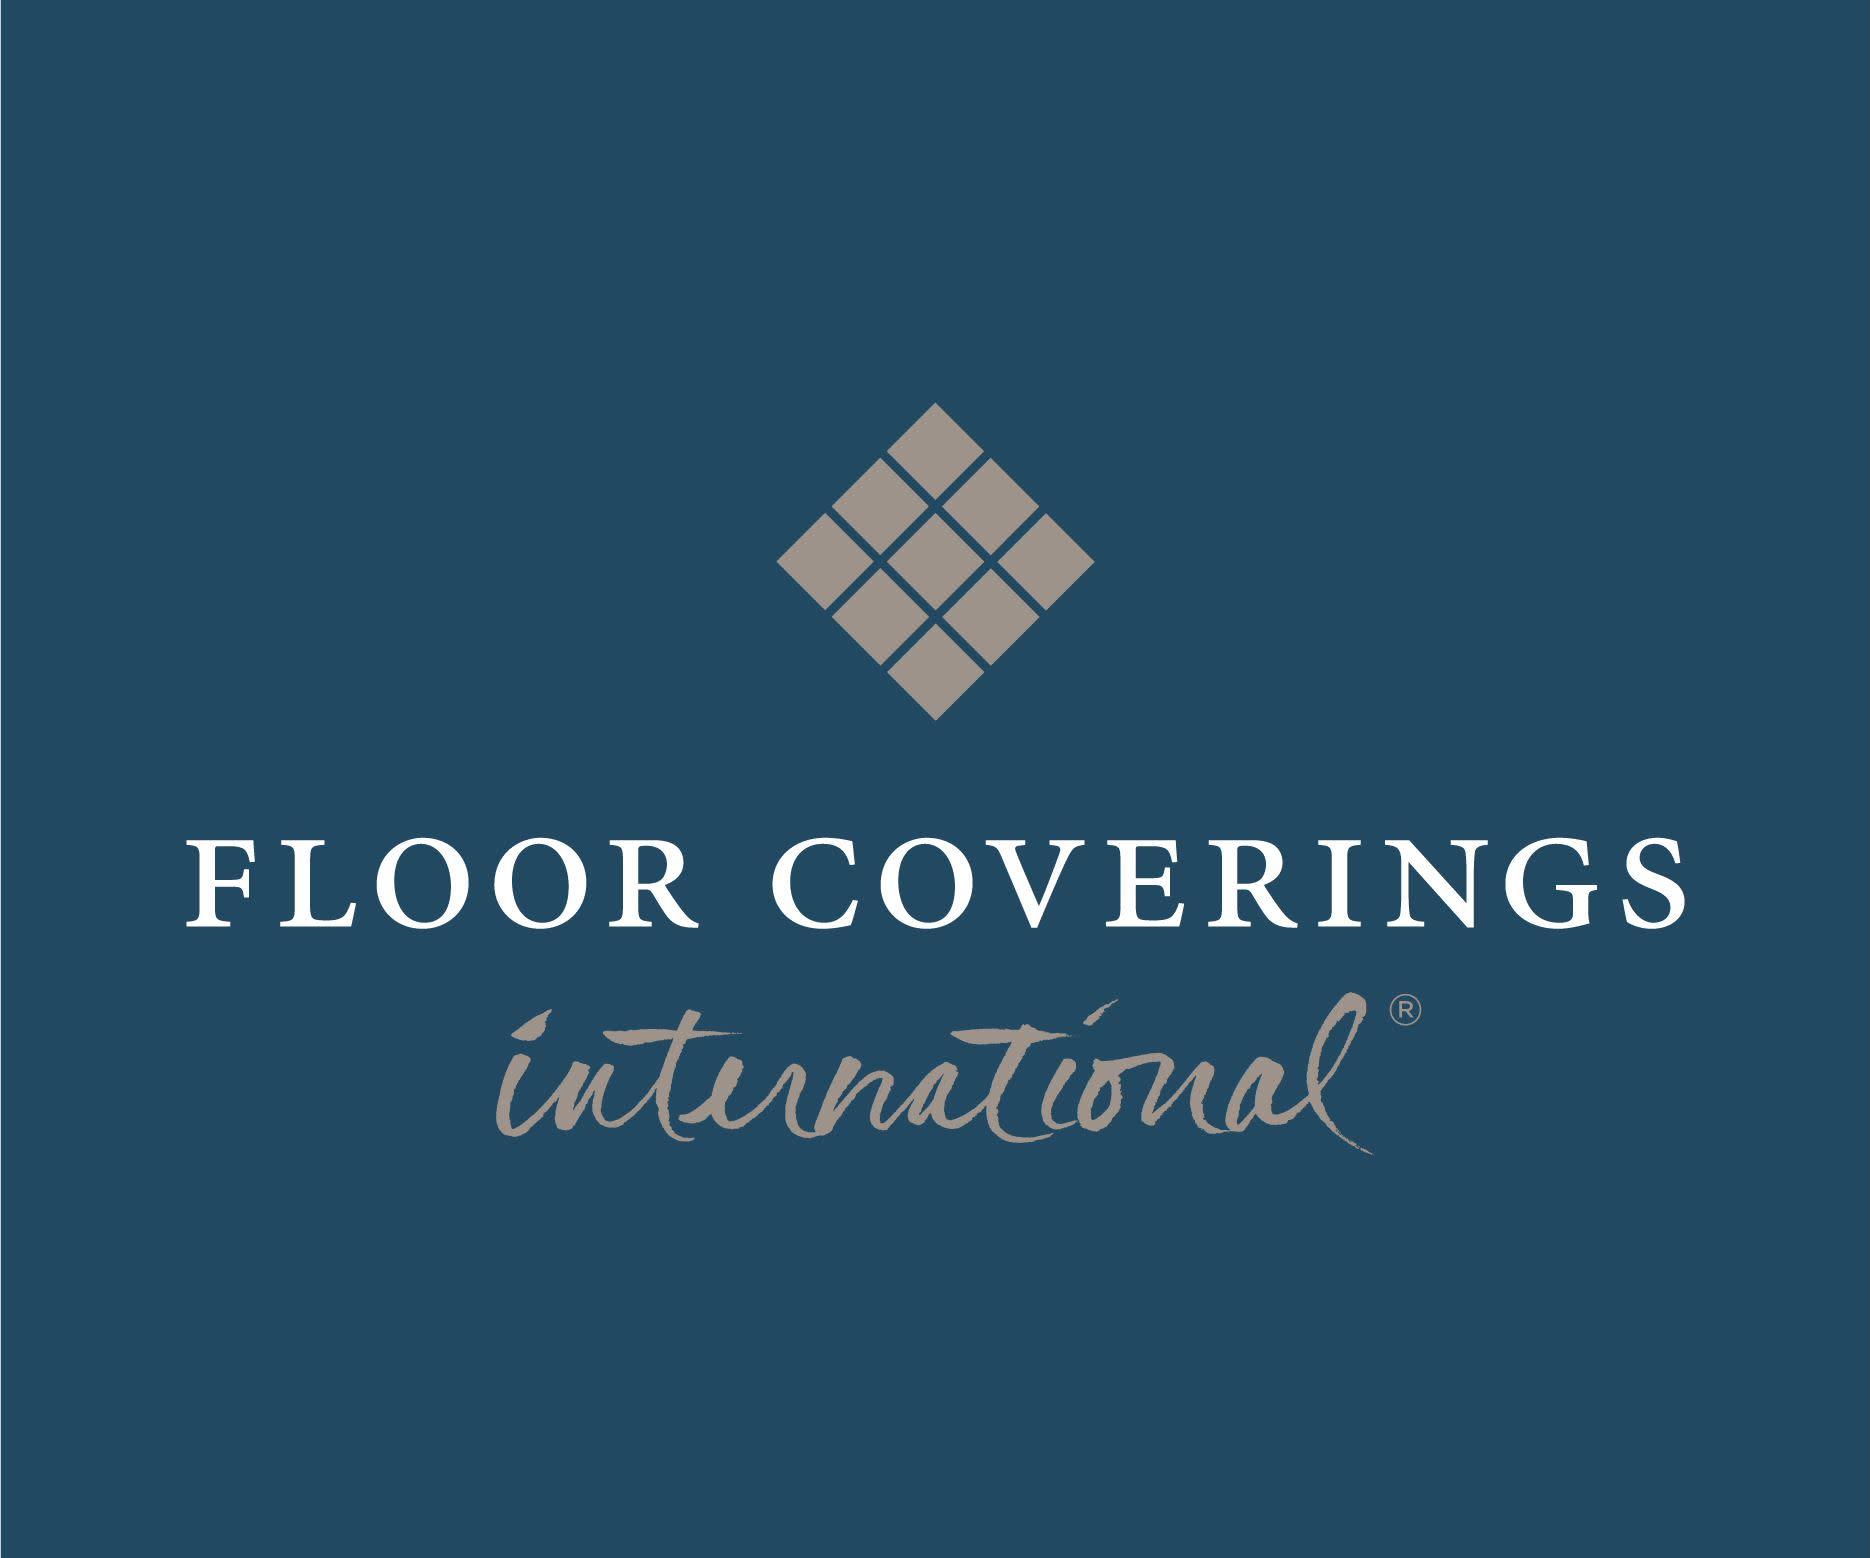 Floor Coverings International